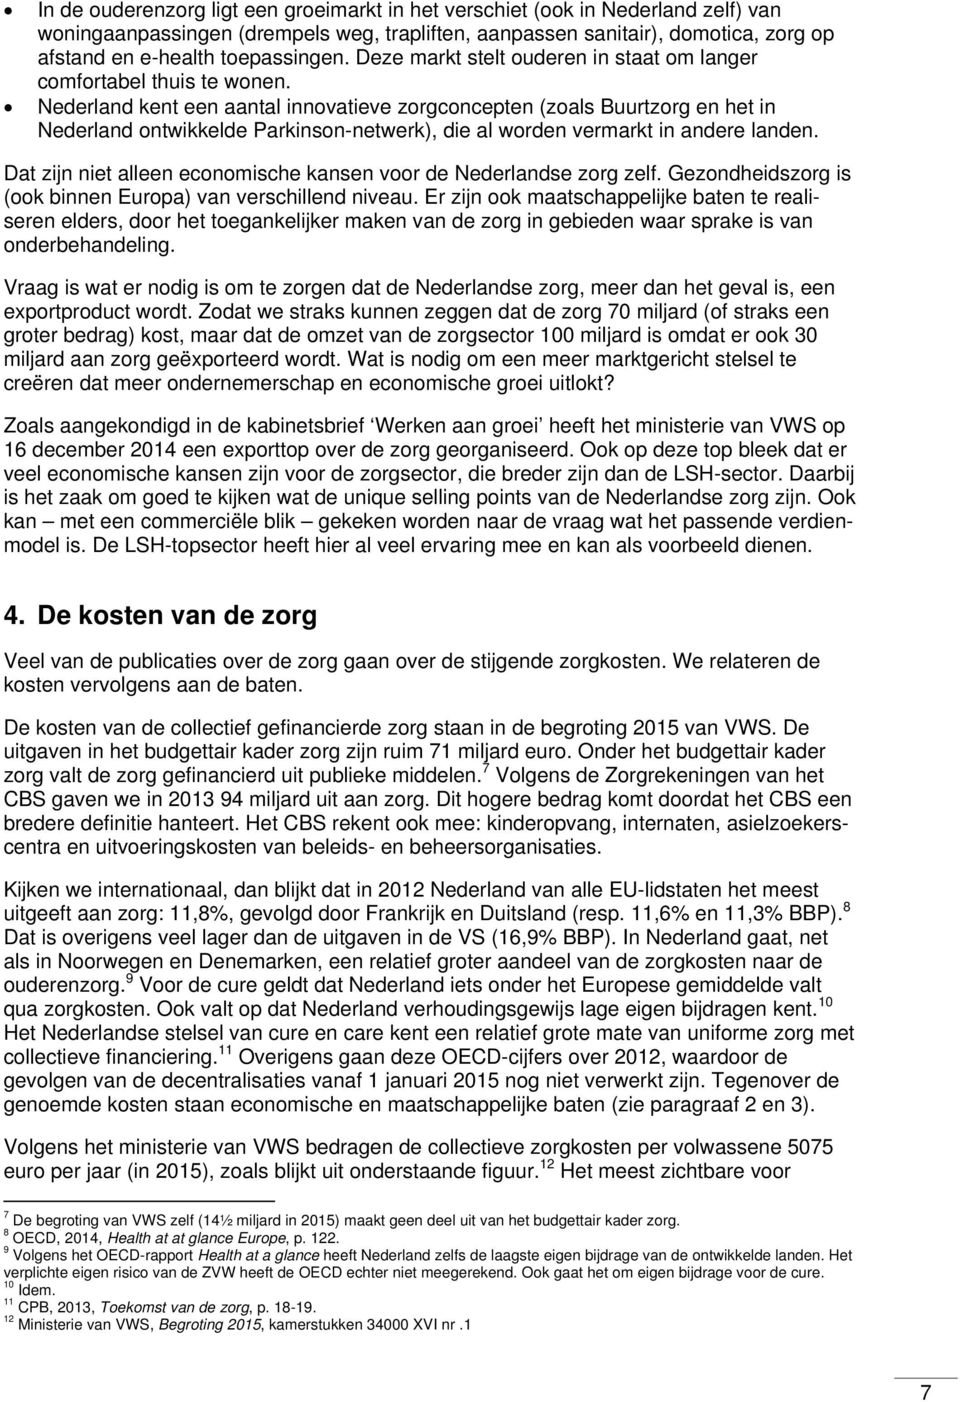 Nederland kent een aantal innovatieve zorgconcepten (zoals Buurtzorg en het in Nederland ontwikkelde Parkinson-netwerk), die al worden vermarkt in andere landen.